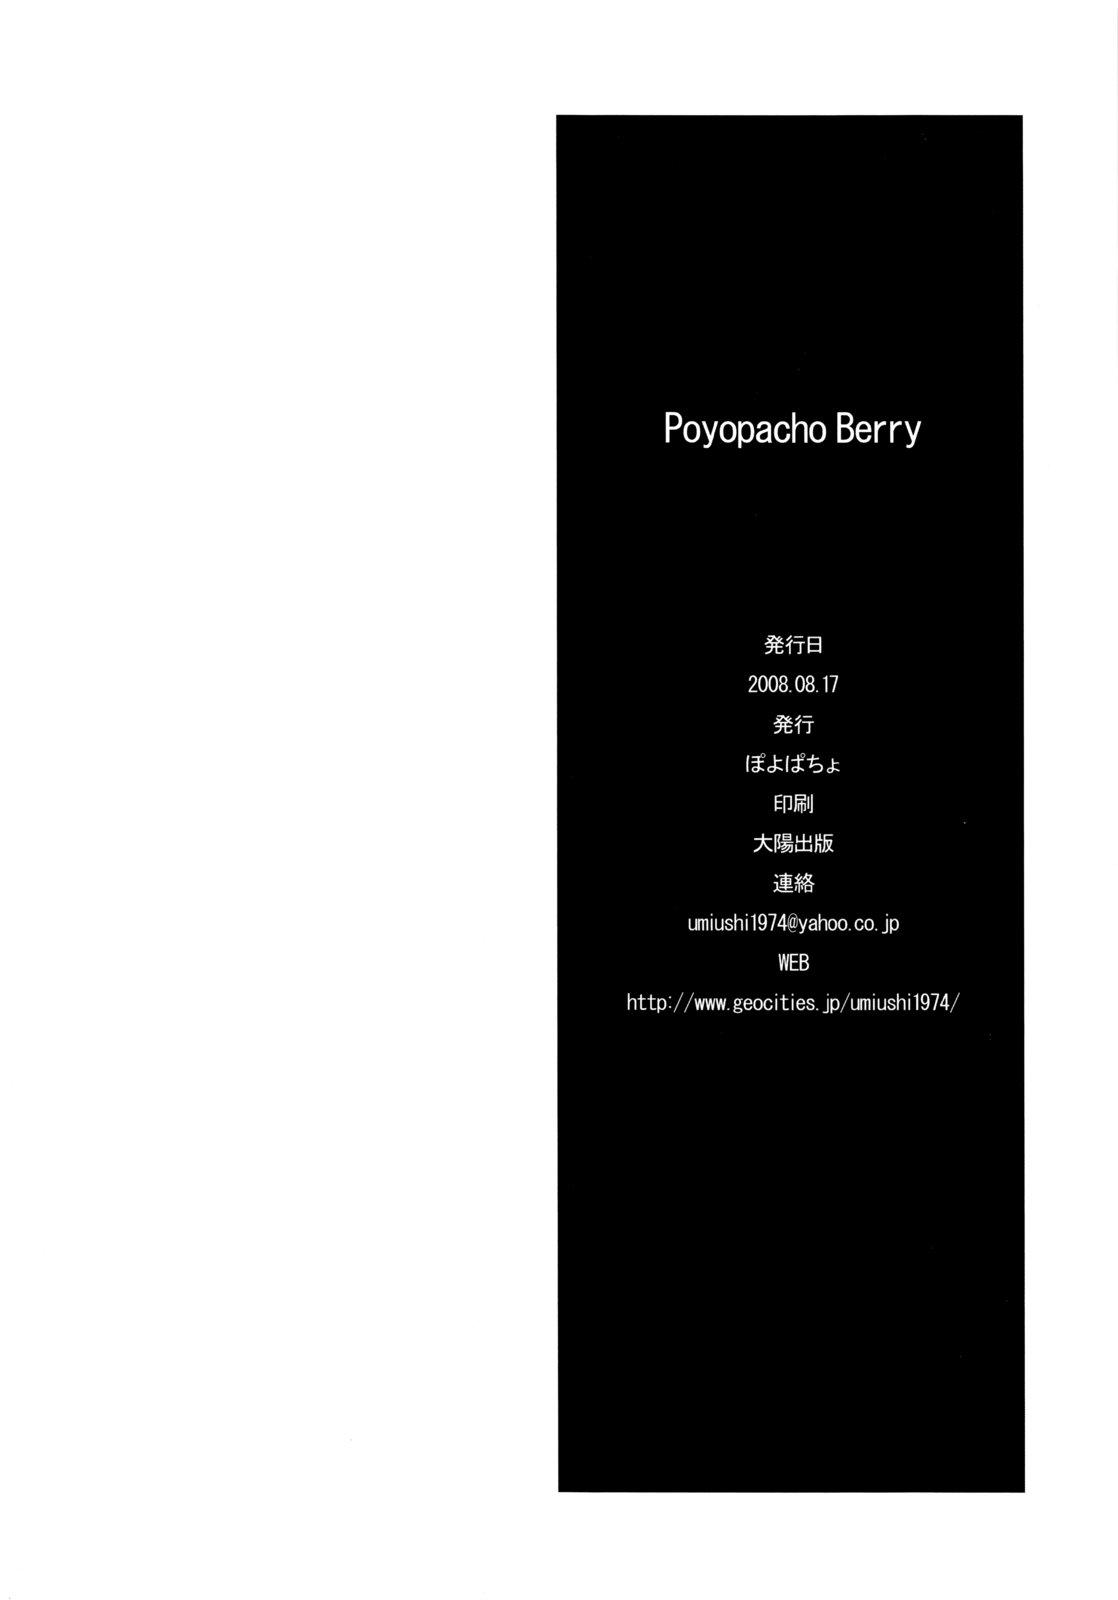 Top Poyopacho Berry - Macross frontier Delicia - Page 25